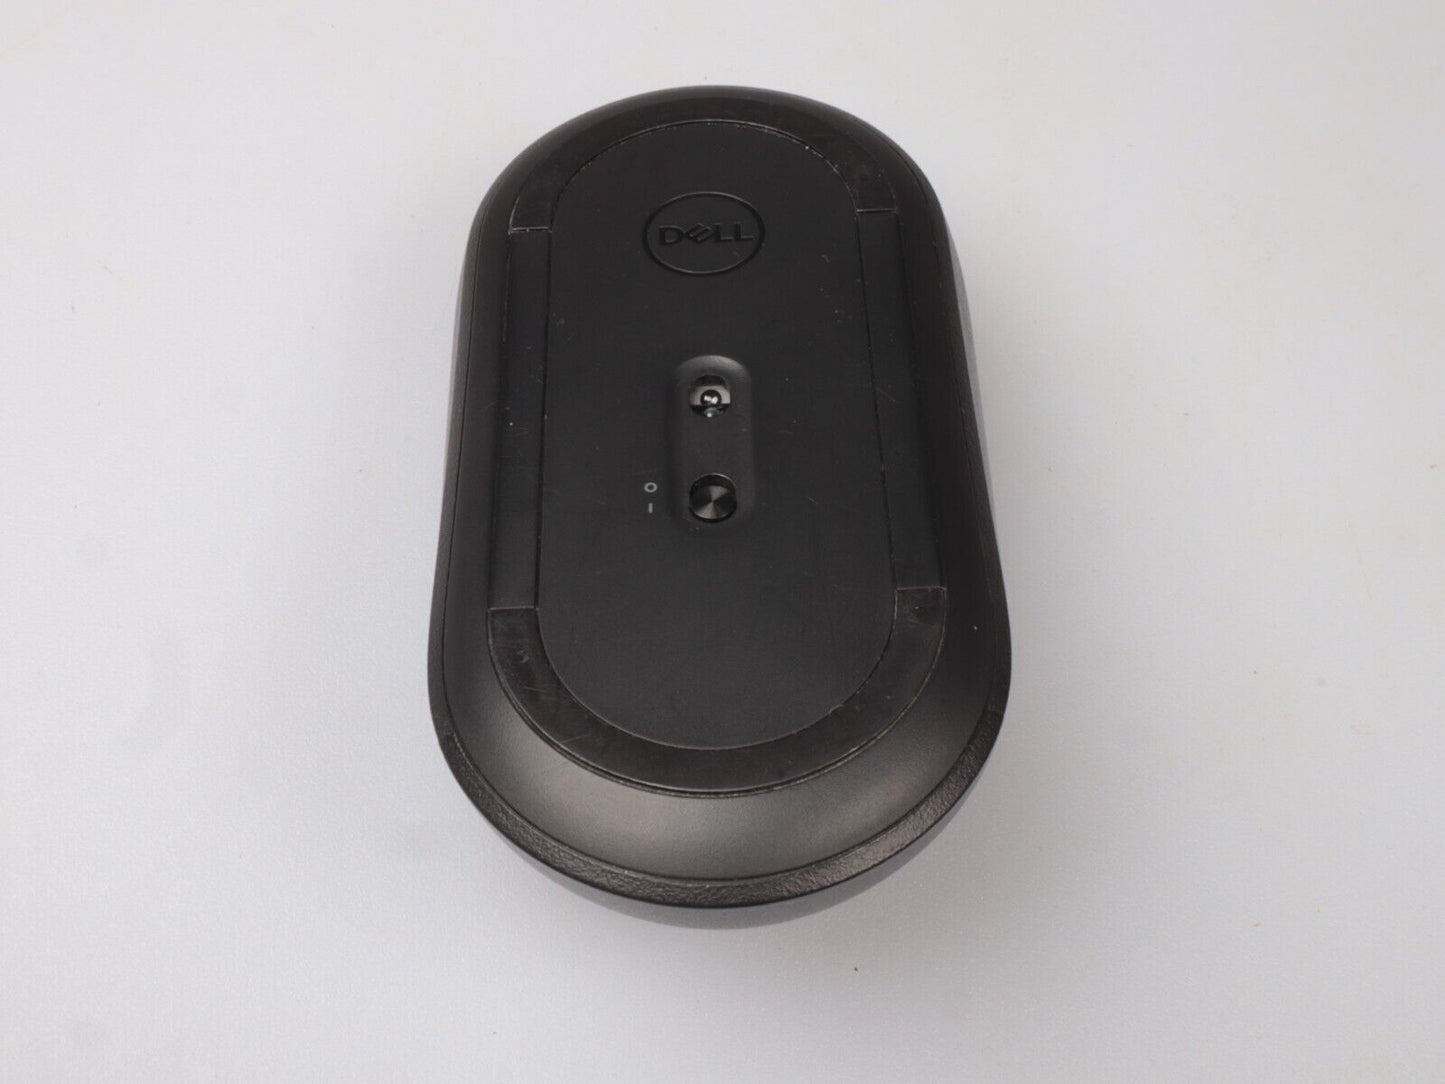 Dell mobiele draadloze muis | MS3000 | Zwart 